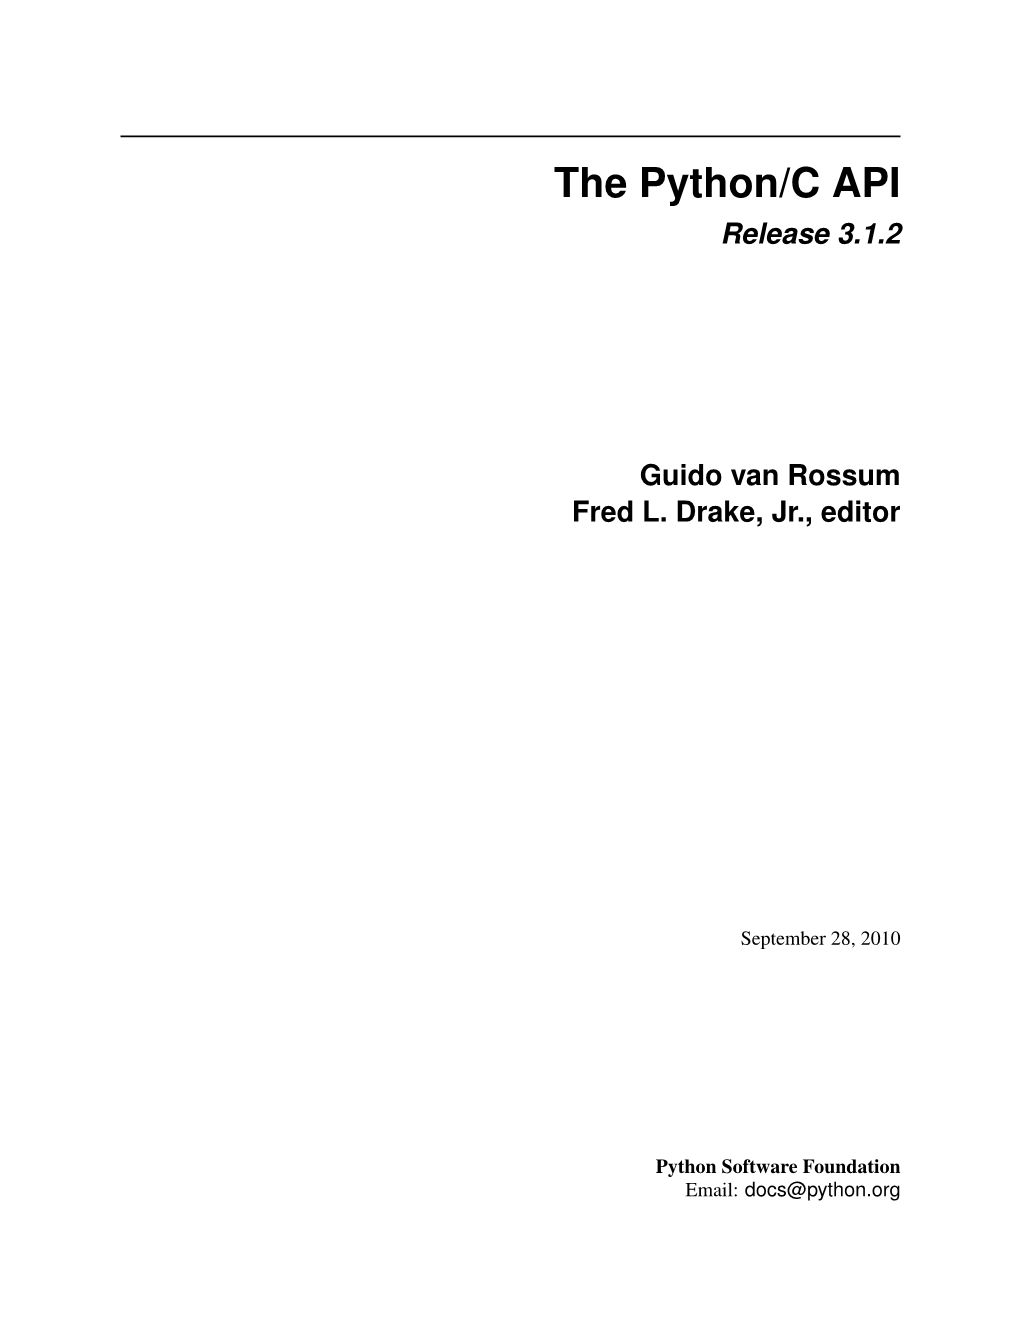 The Python/C API Release 3.1.2